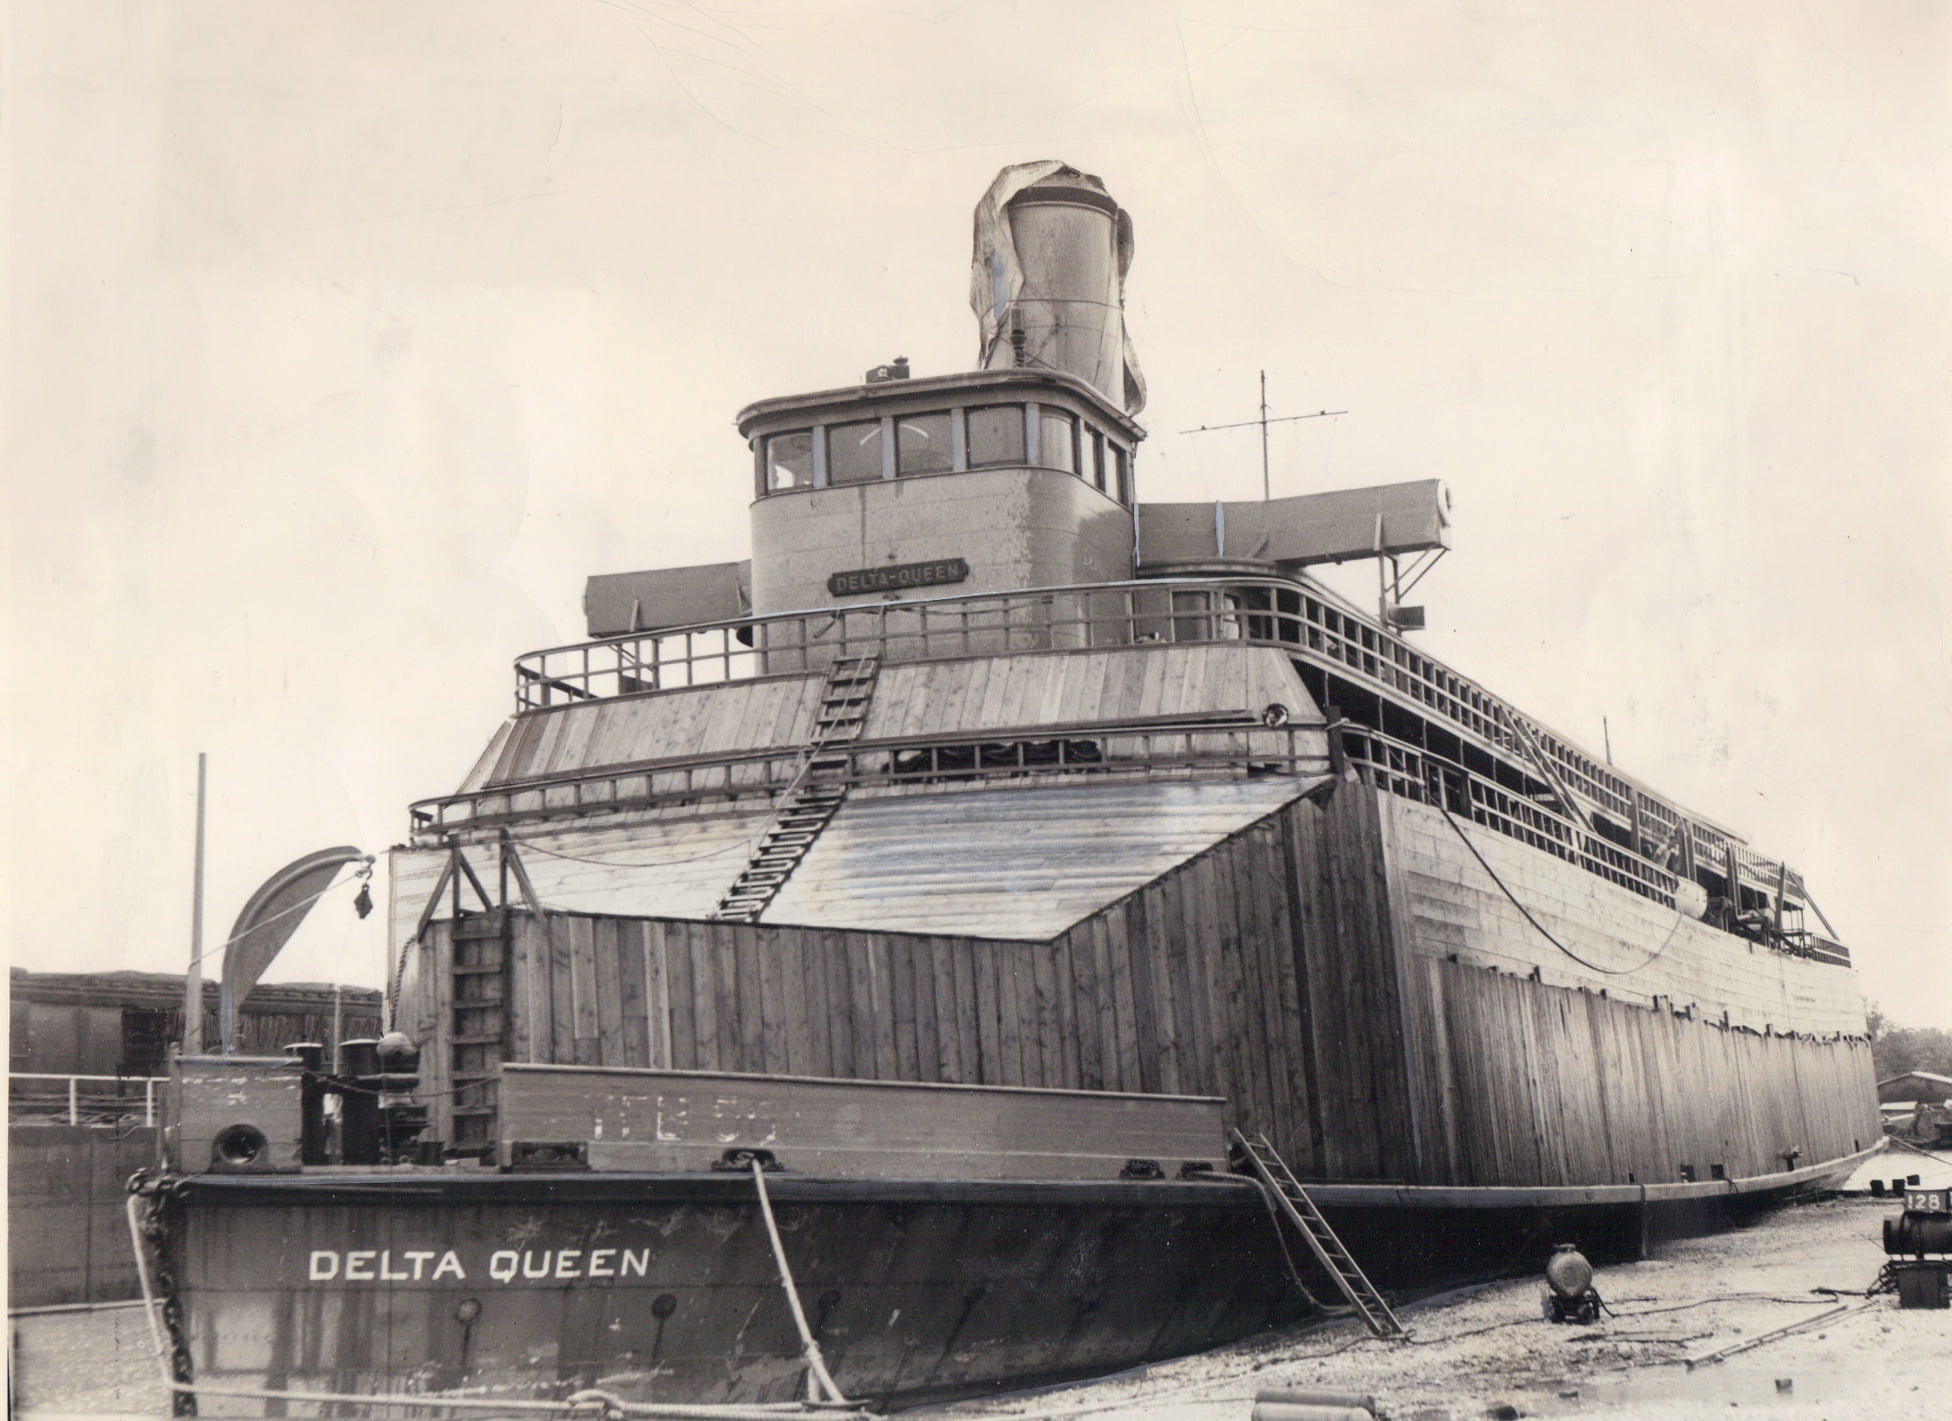 https://steamboats.com/jpgs/deltaqueen05-20-1947.jpg